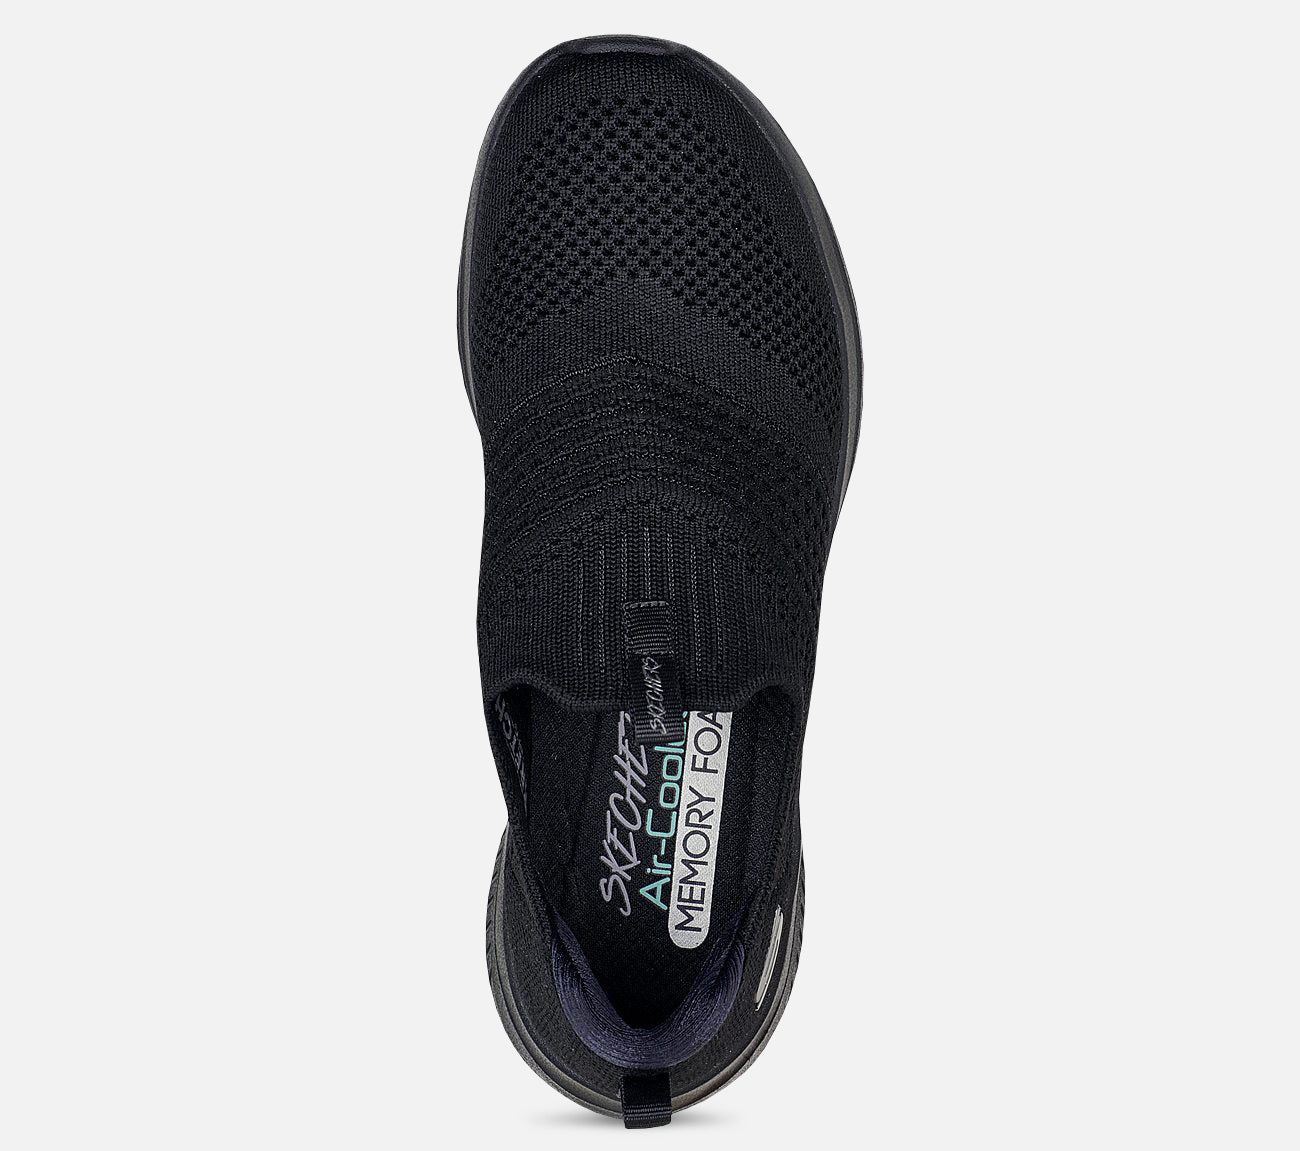 Ultra Flex 3.0 - Classy Charm Shoe Skechers